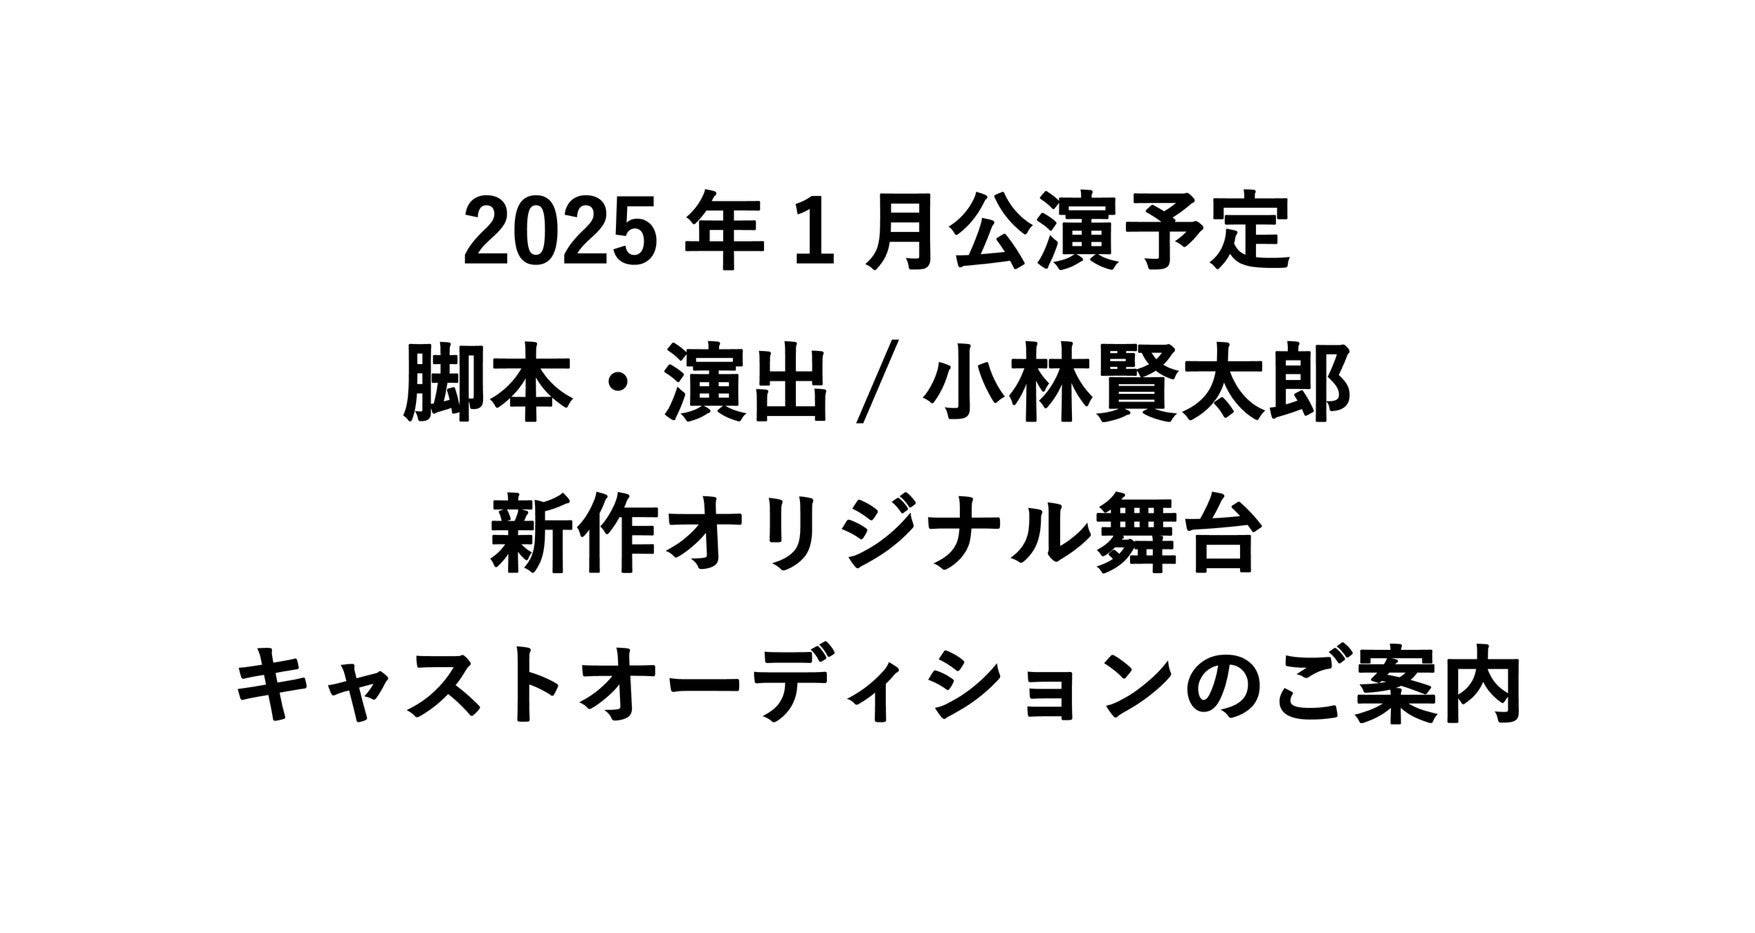 ながおか 米百俵フェス 〜花火と食と音楽と〜 2025開催決定！